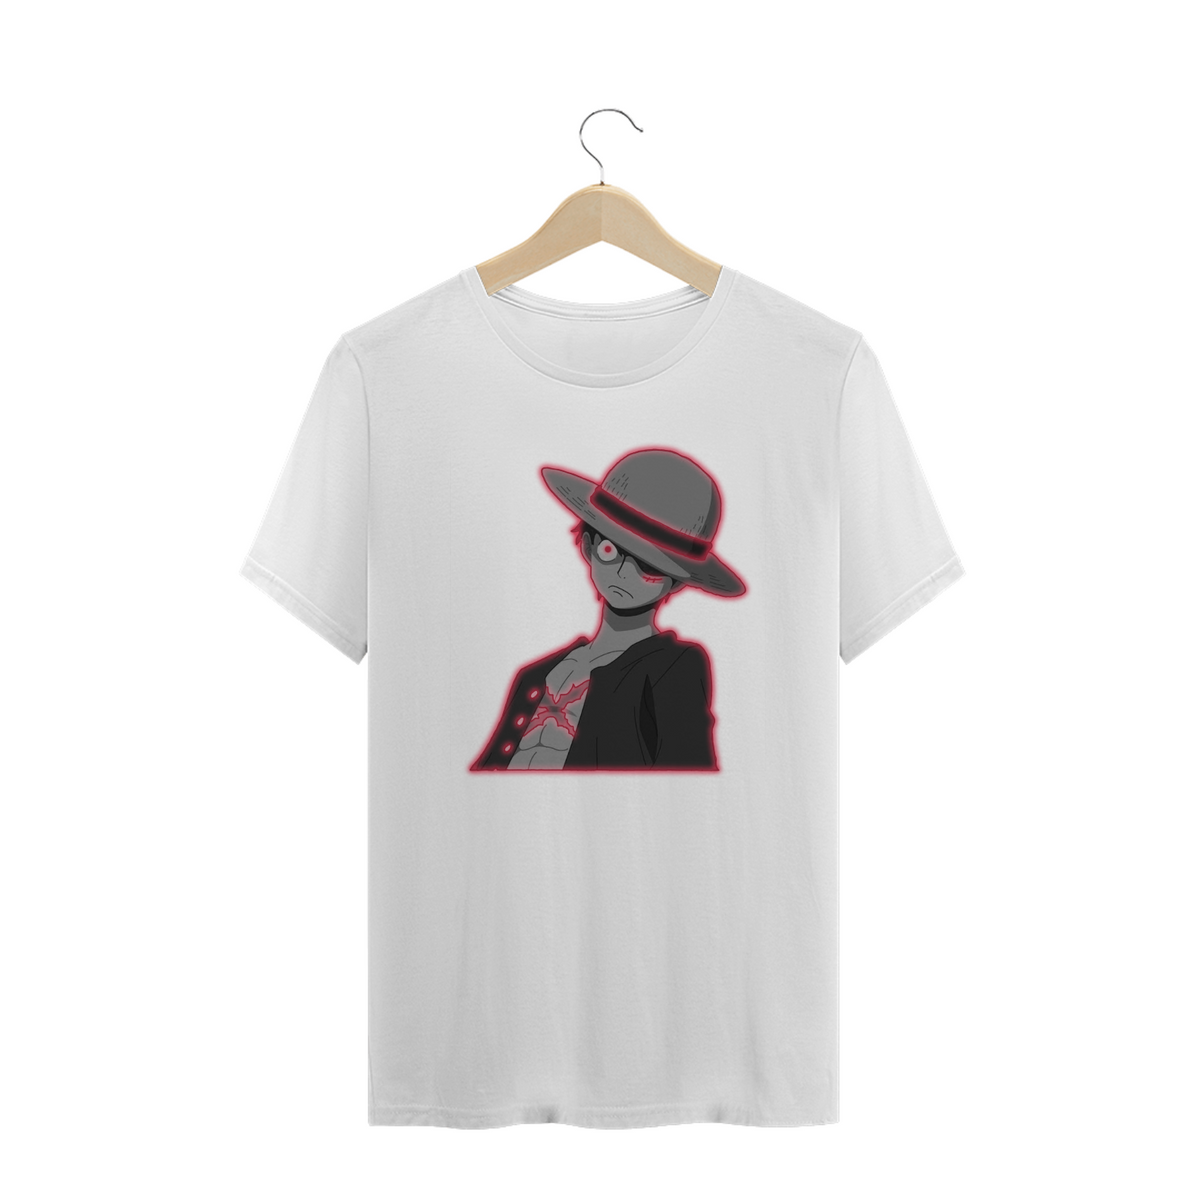 Nome do produto: T-shirt  One Piece - Luffy  